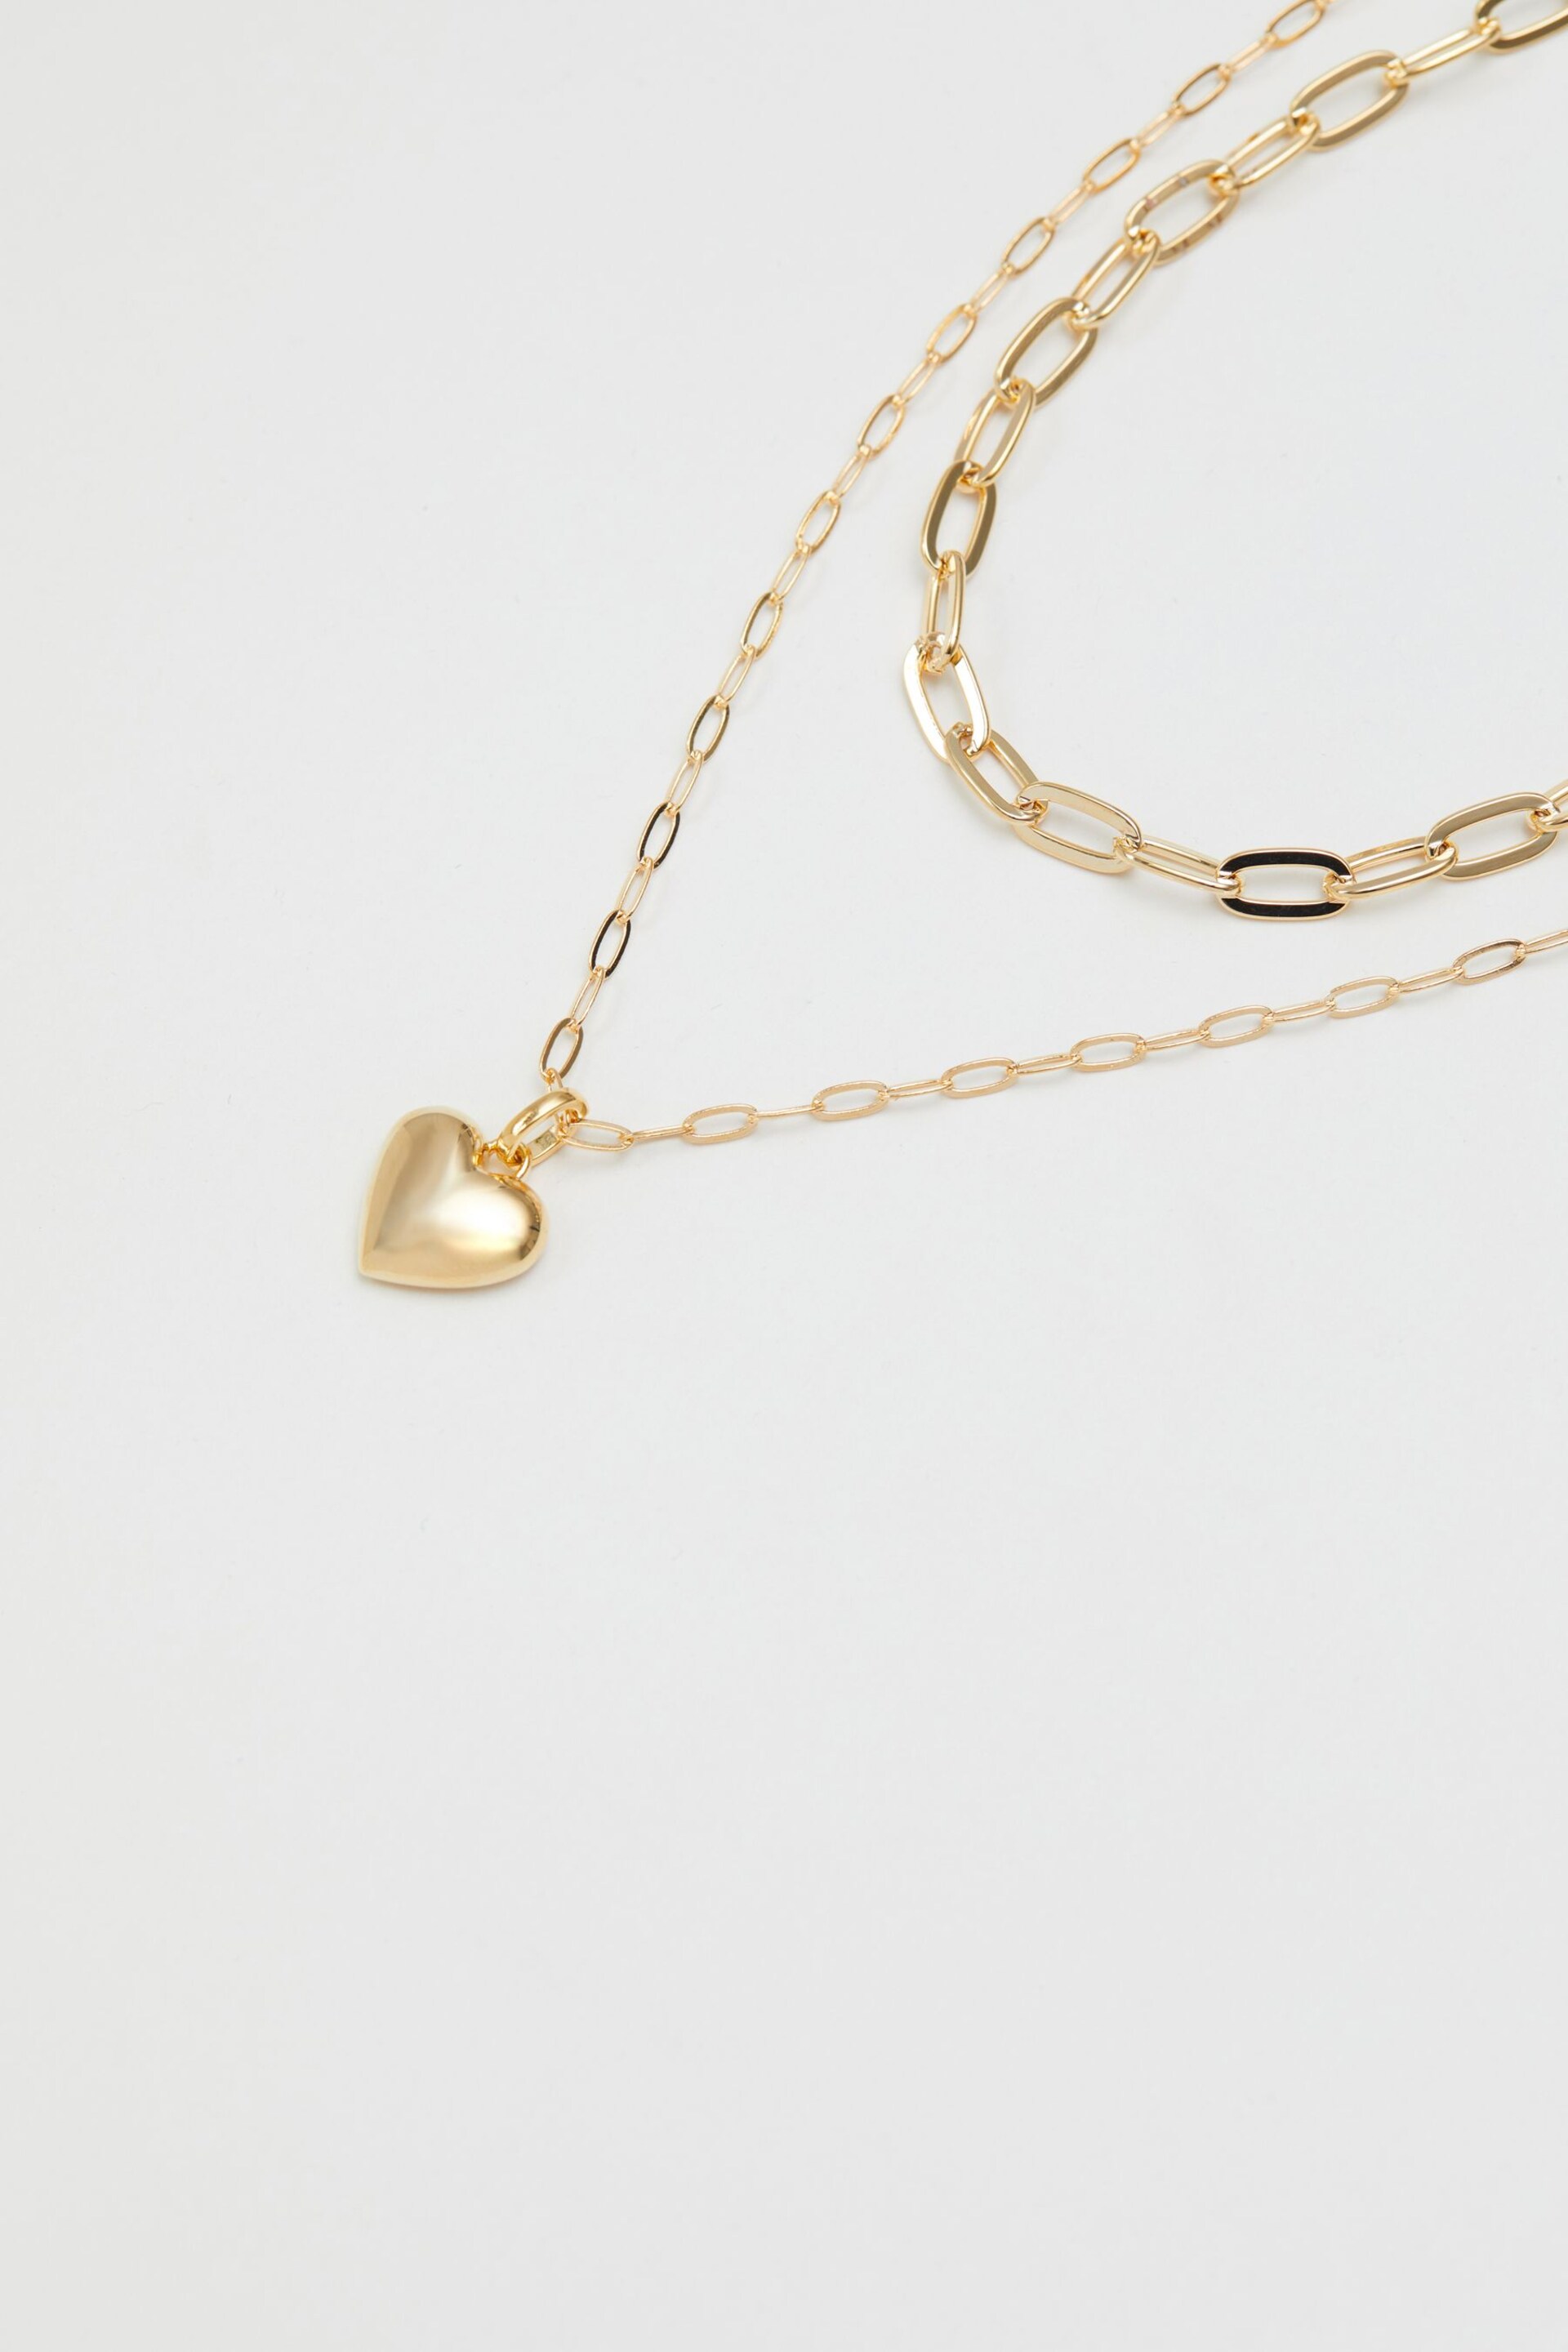 Jon Richard Gold Polished Layered Heart Necklace - Image 2 of 4